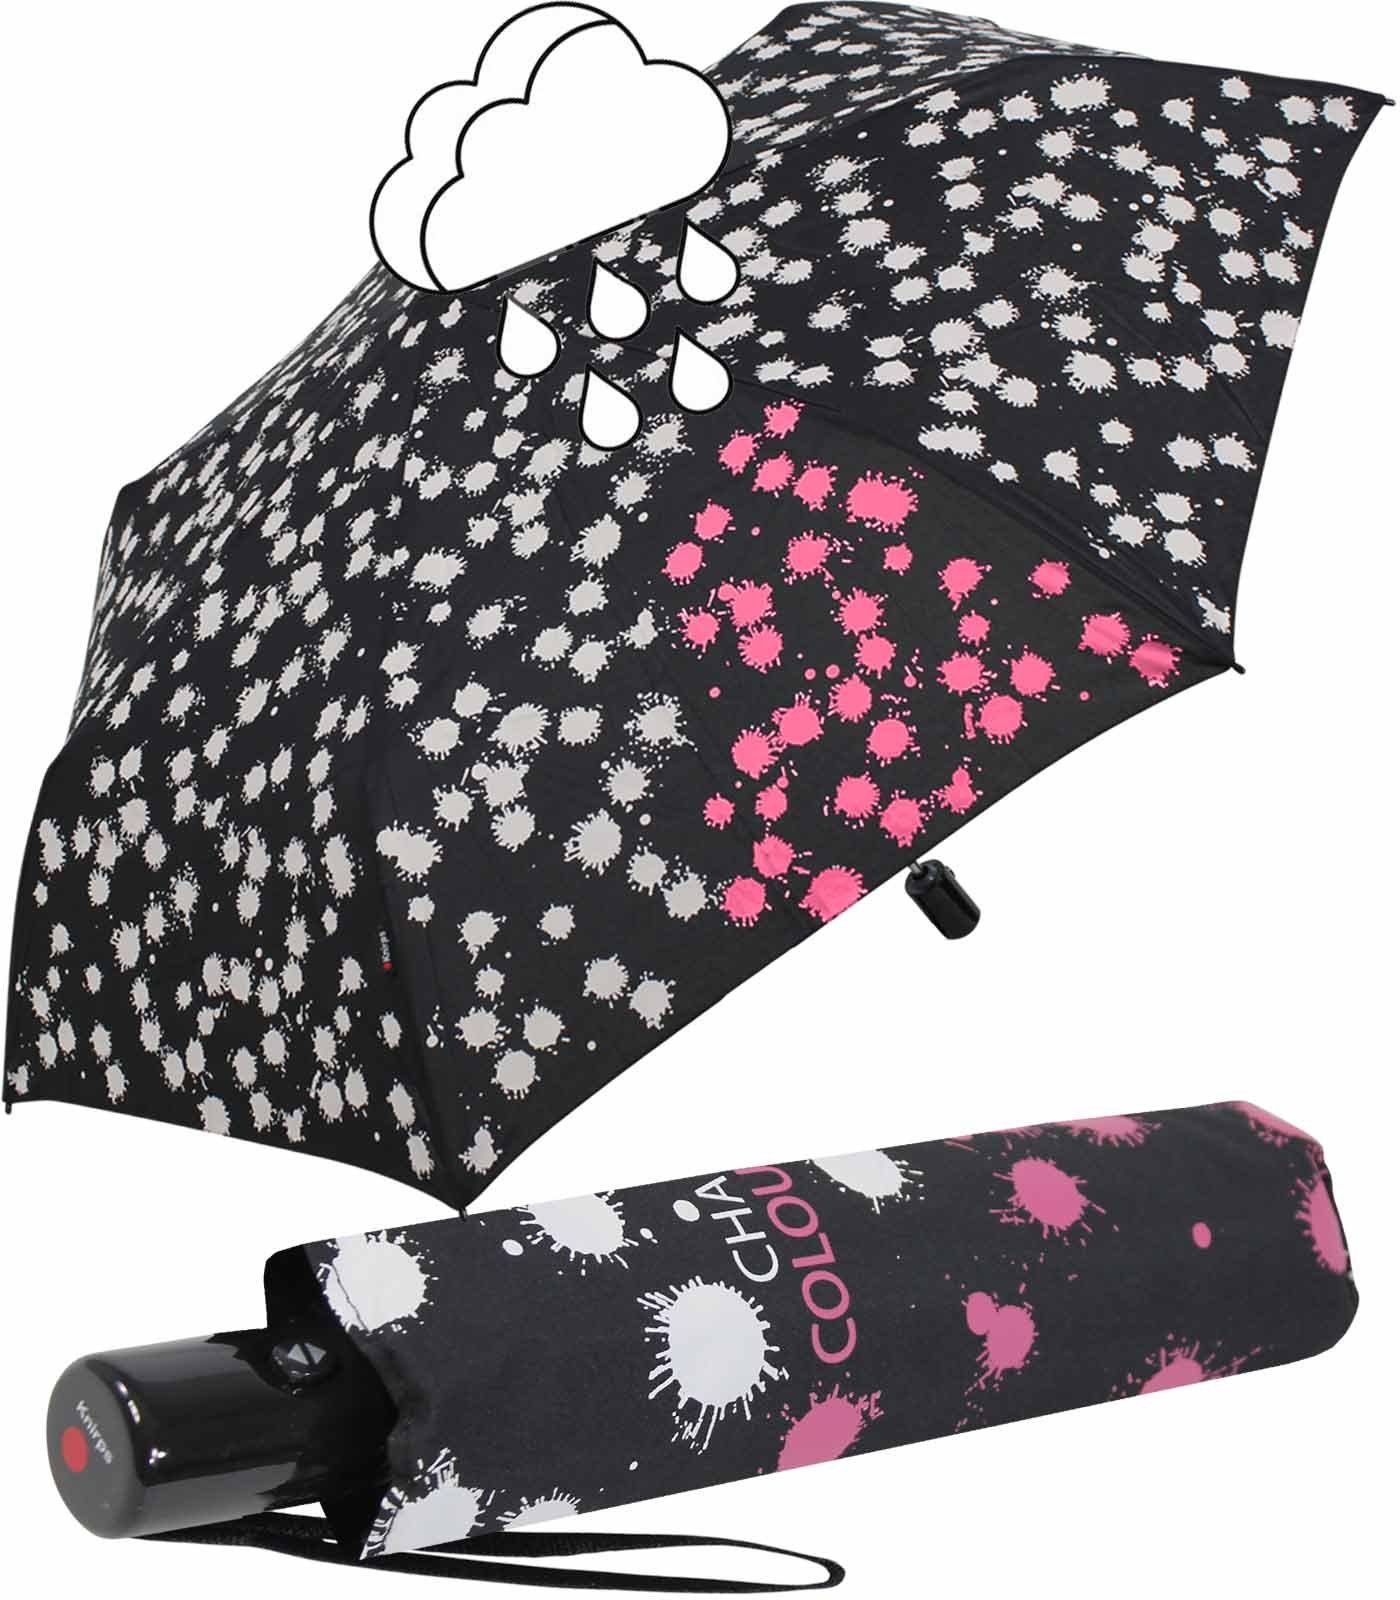 schmaler Auf-Zu-Automatik, Nässe Langregenschirm Knirps® bei färben Schirm pink Flecken weißen leichter, sich die mit